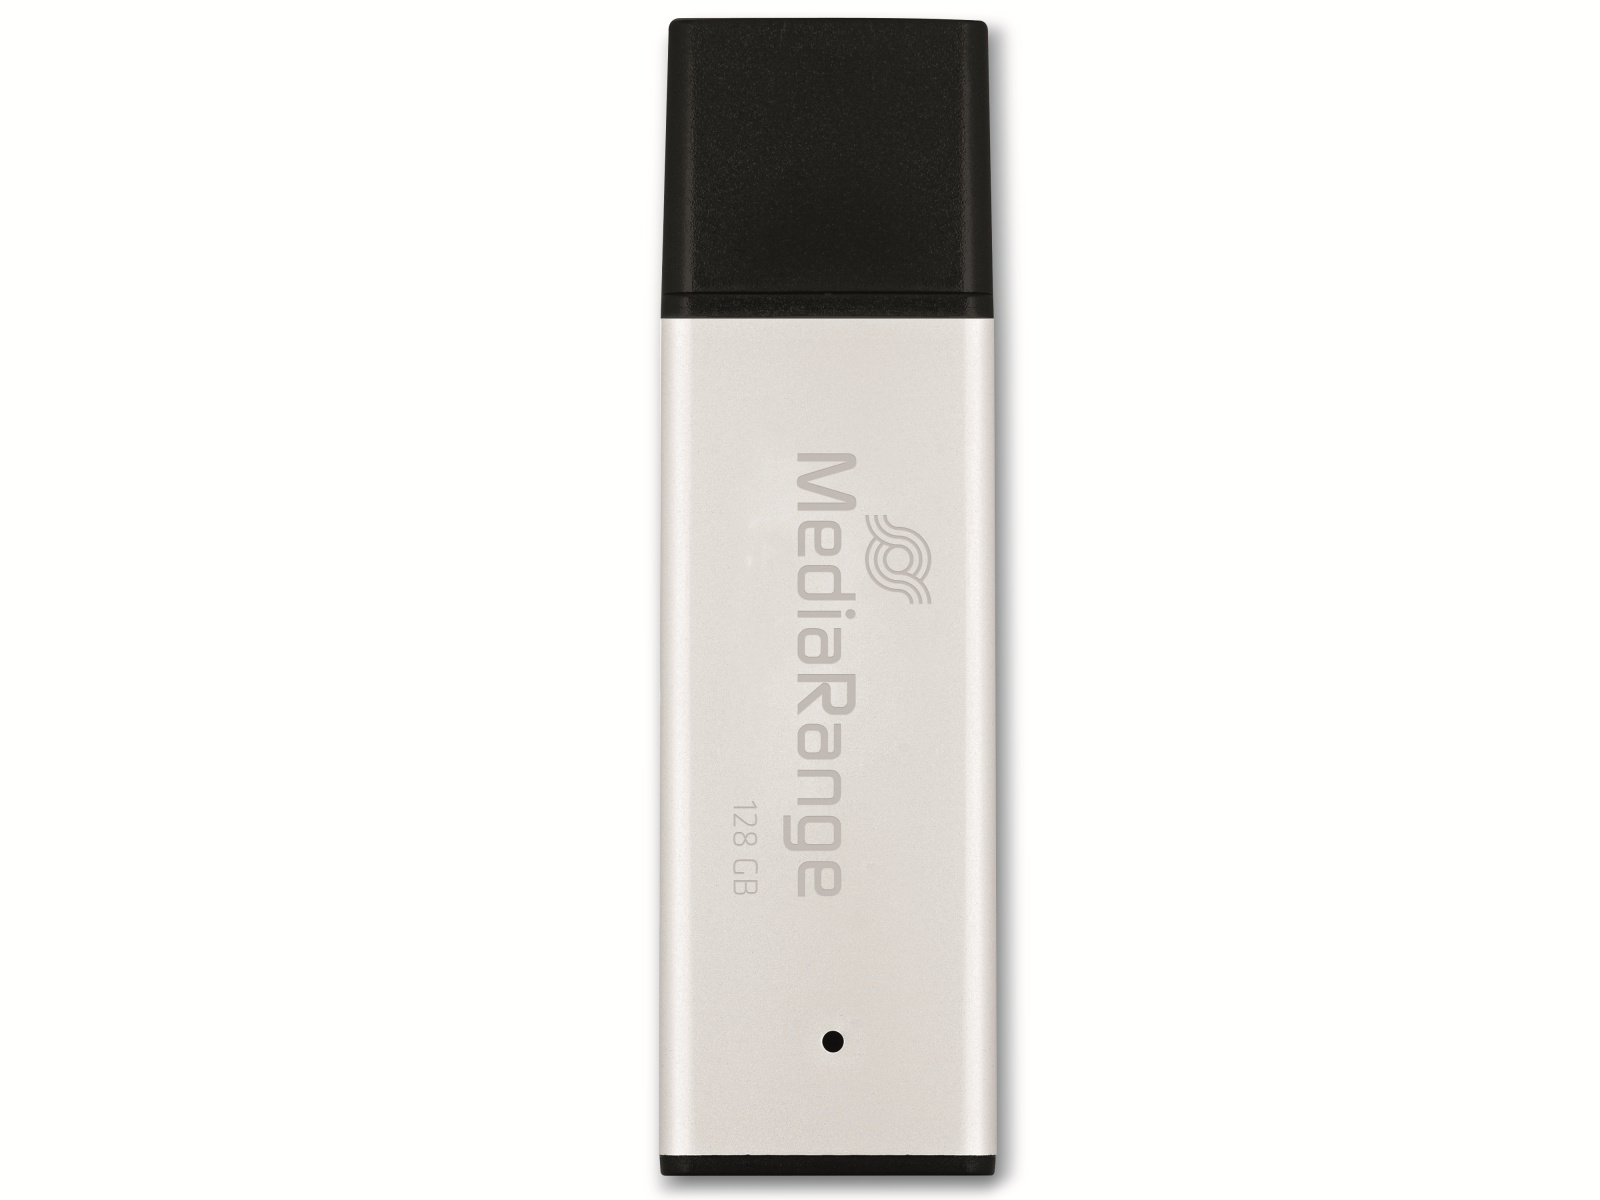 MEDIARANGE USB-Stick MR1902, USB 3.0, 128 GB